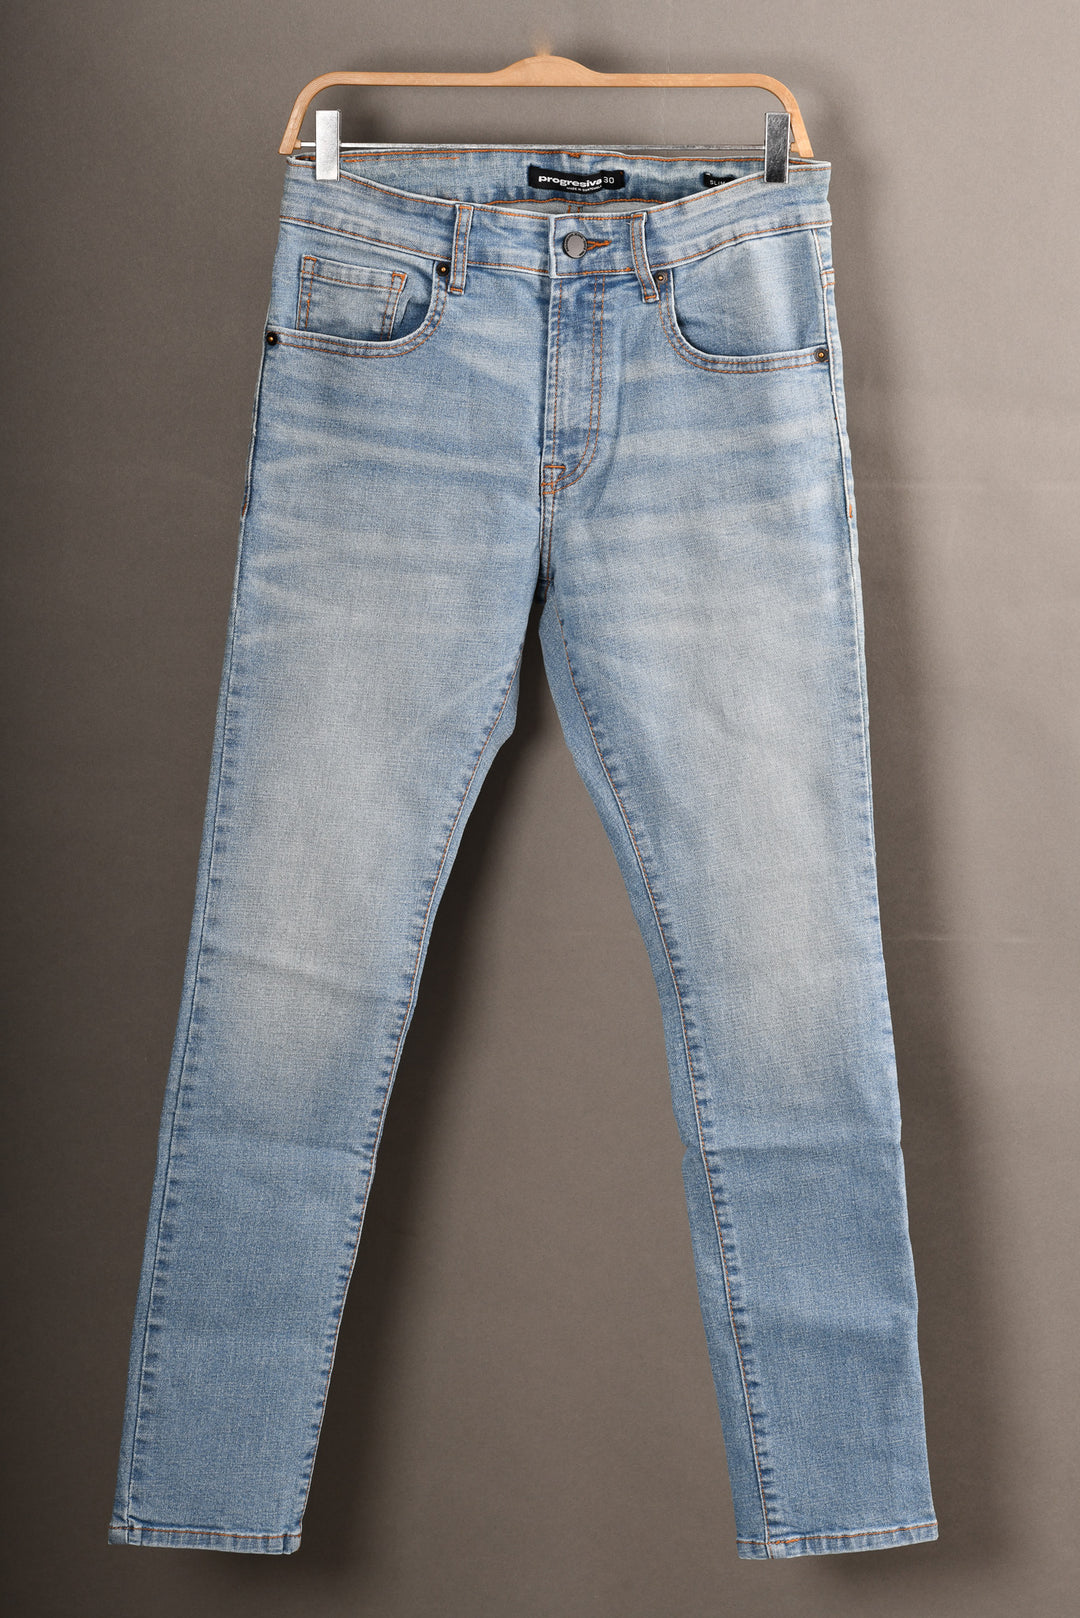 Jeans super denim - No. 13  - slim - Light Indigo